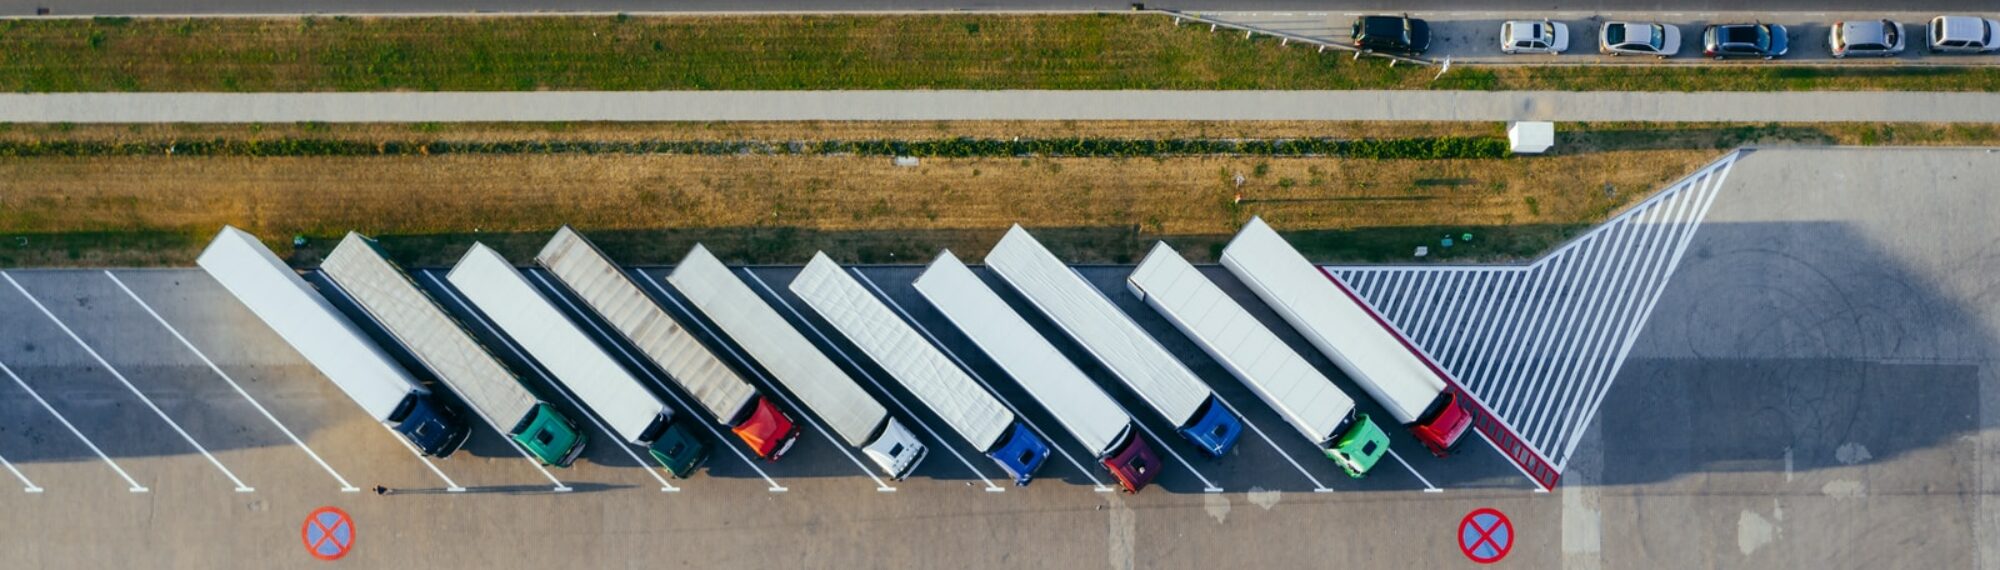 parked trucks